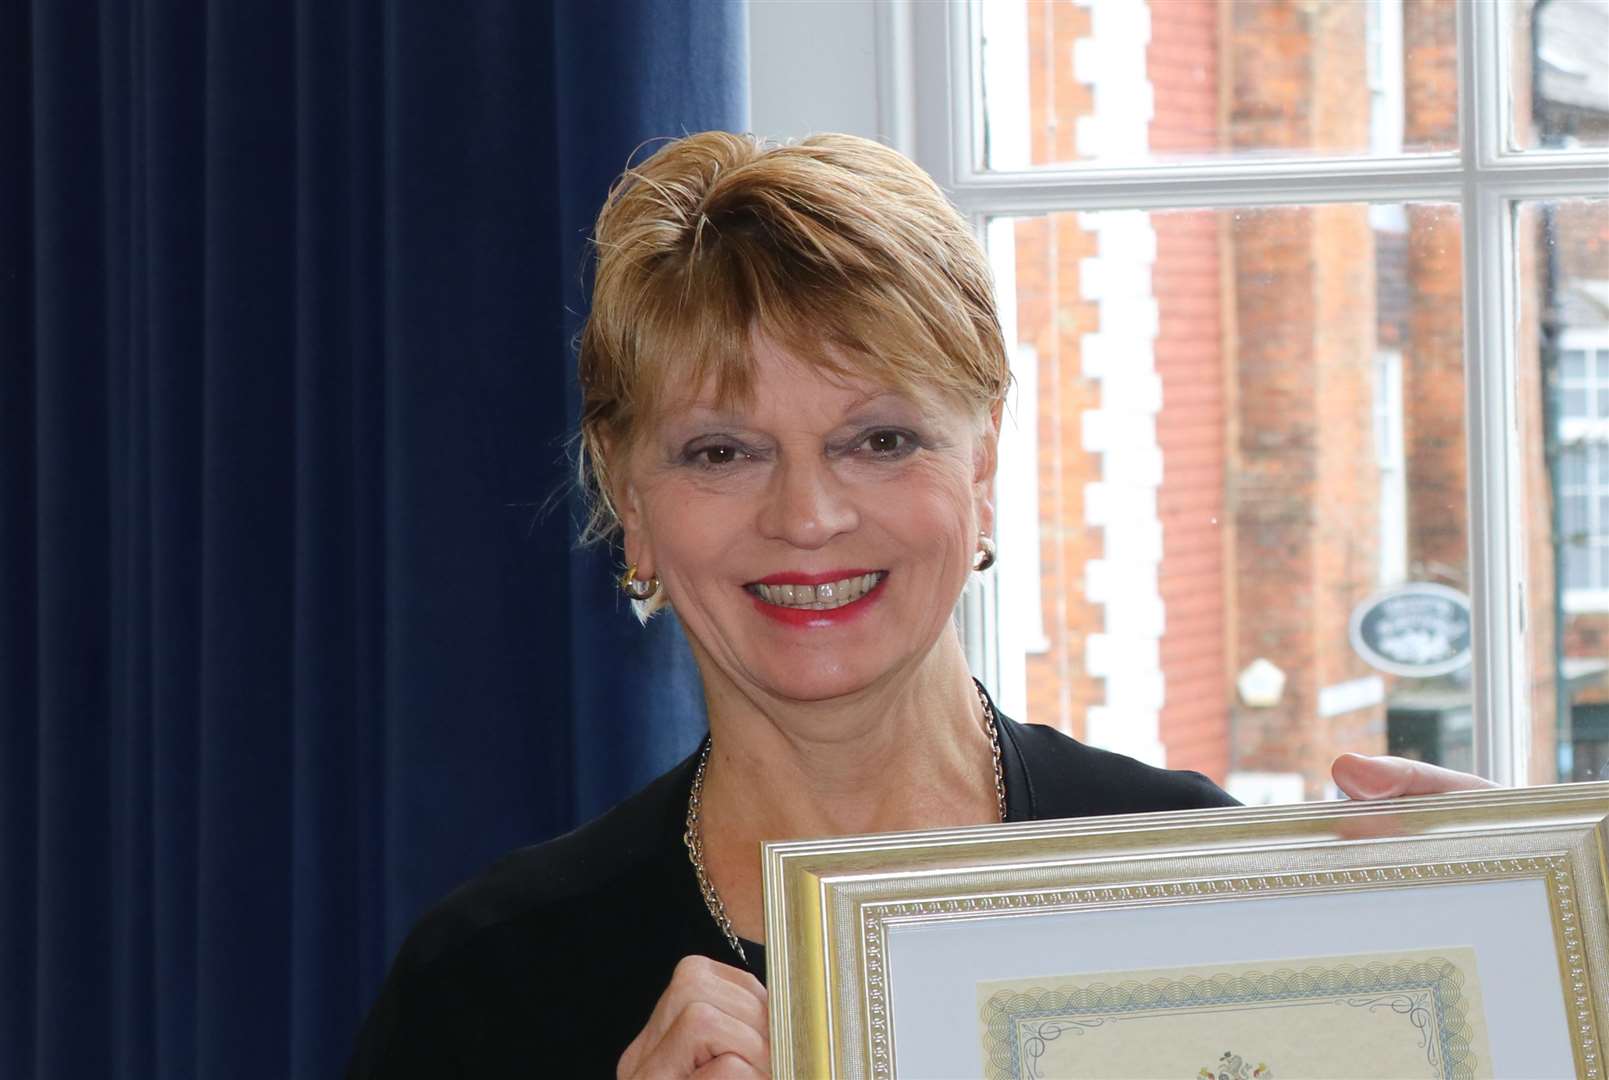 Deputy Mayor of Tenterden Sue Ferguson